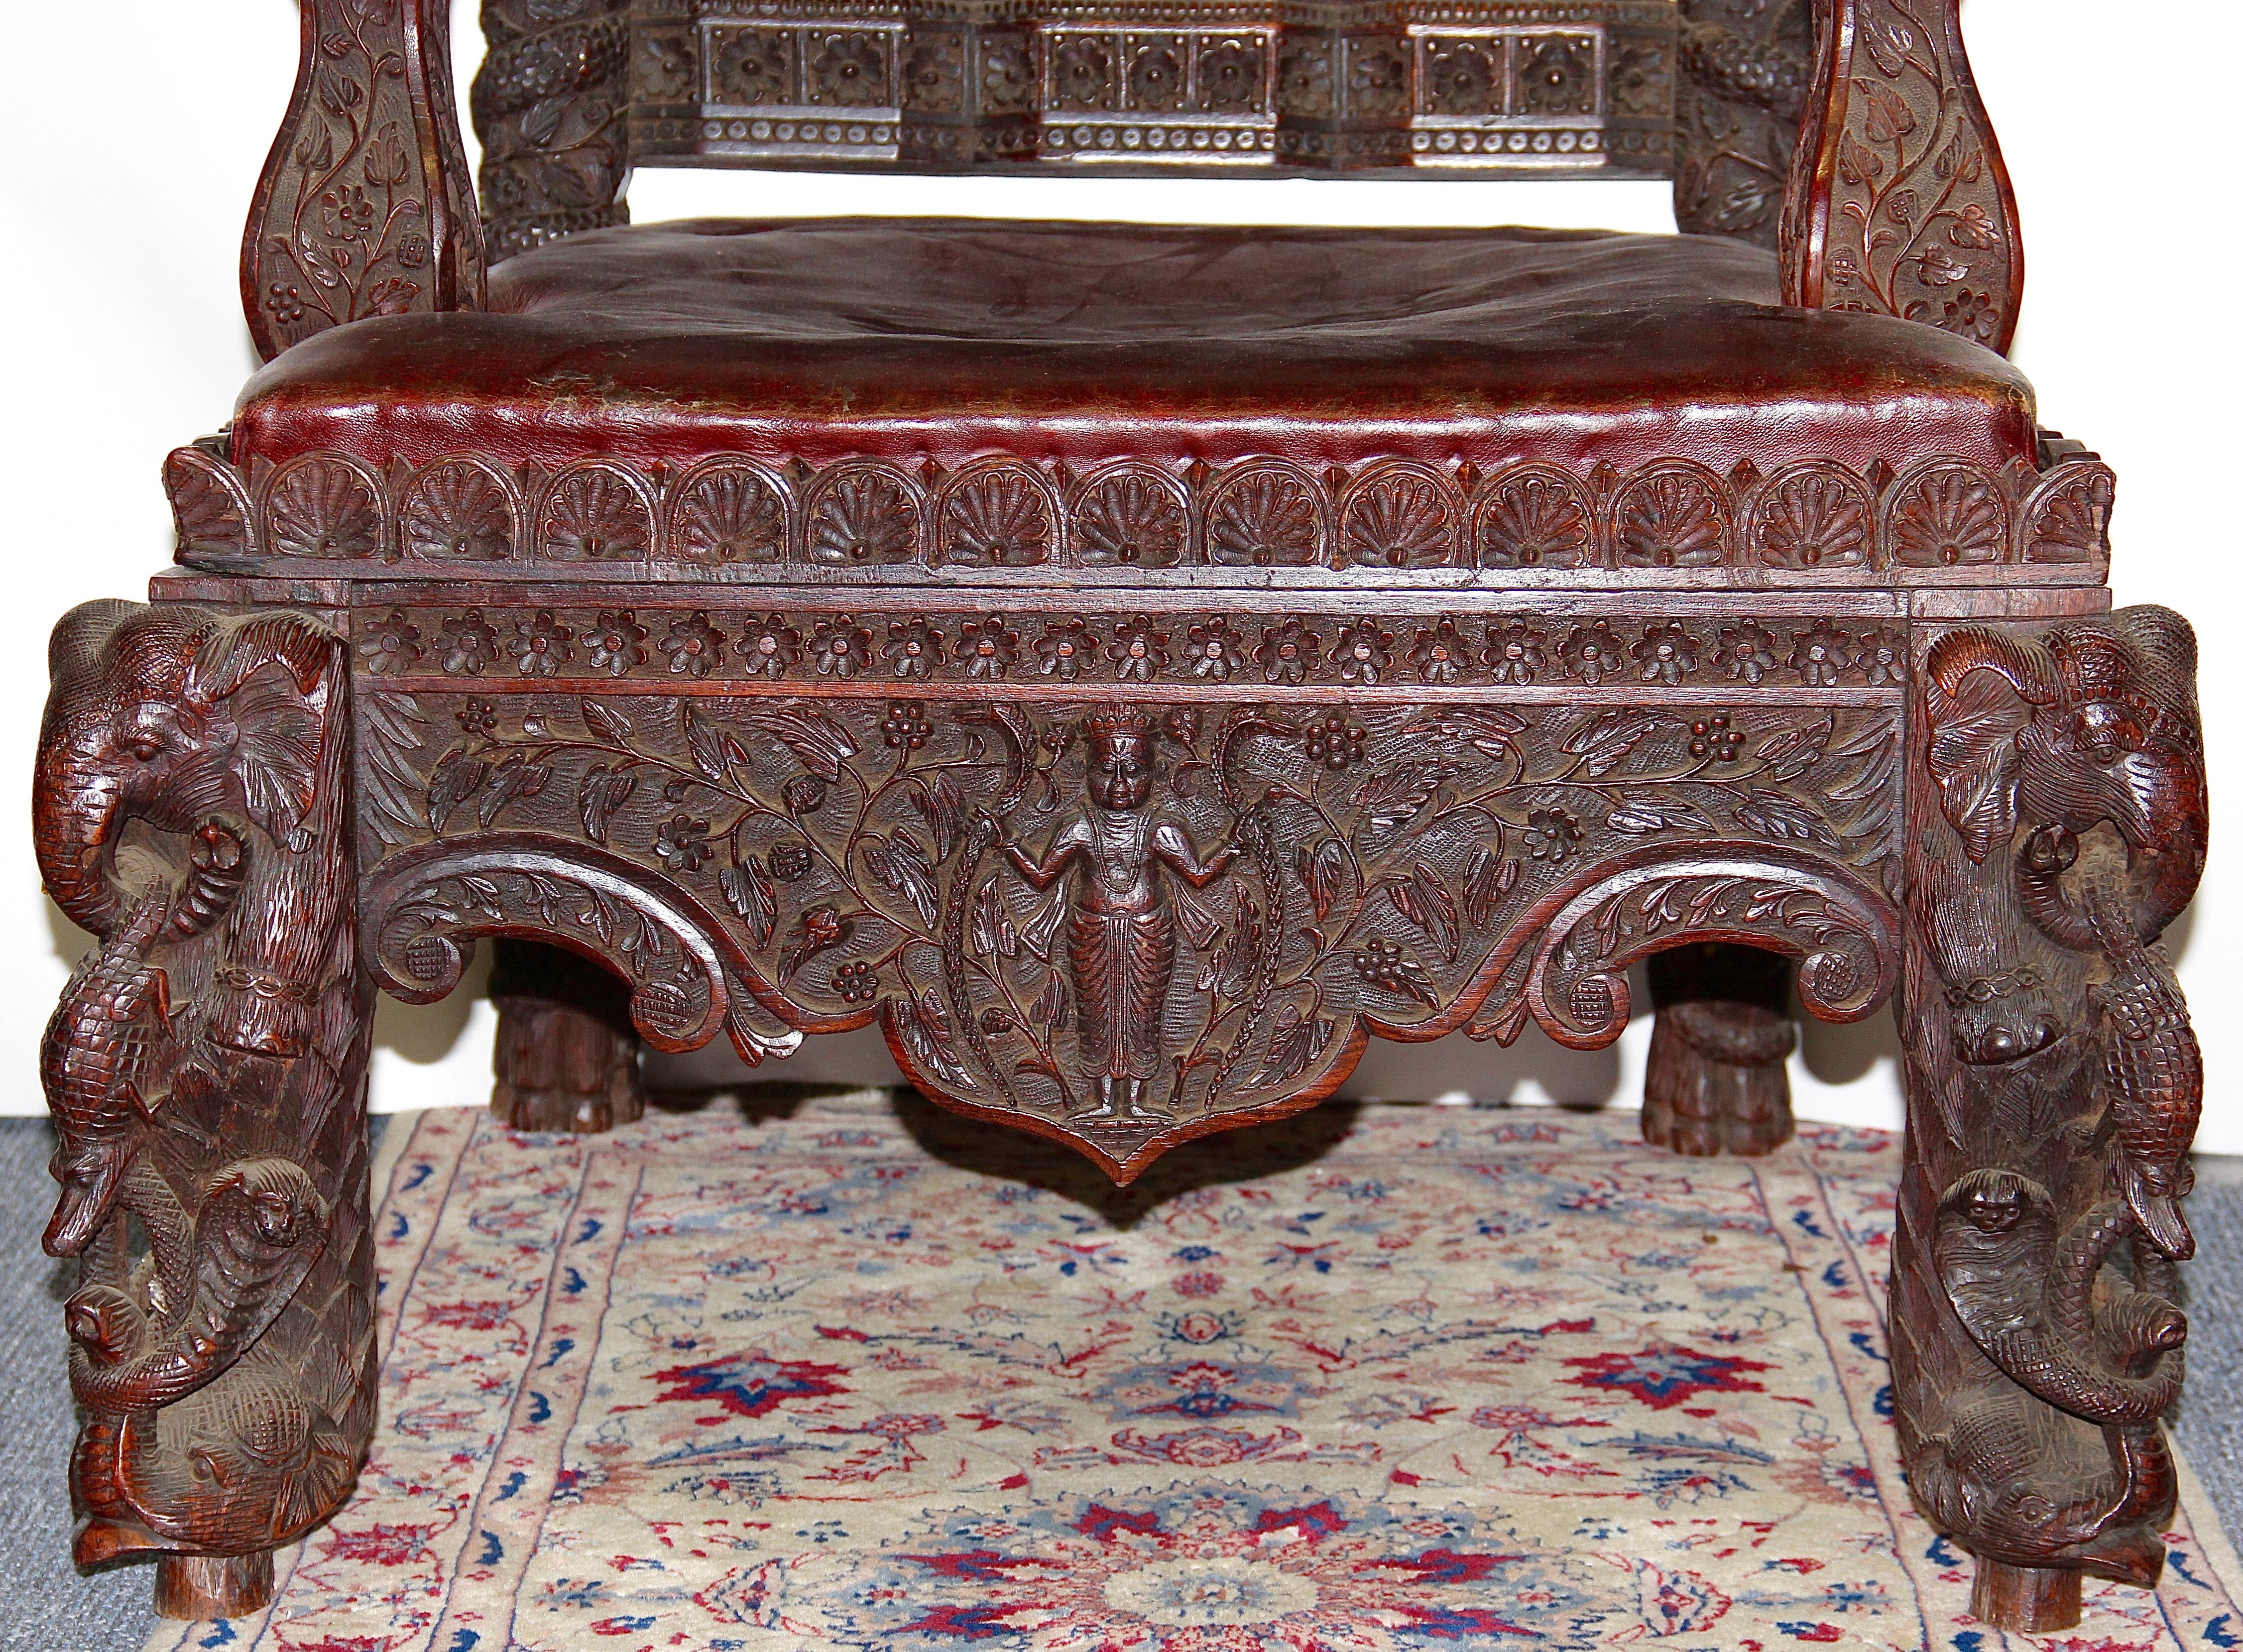 Grande, massive et très décorative chaise trône antique.
Sculptée avec soin et dans le détail.

À première vue, le fauteuil présente des éléments asiatiques. 
Les têtes de lion et les armoiries, en revanche, ont clairement un caractère